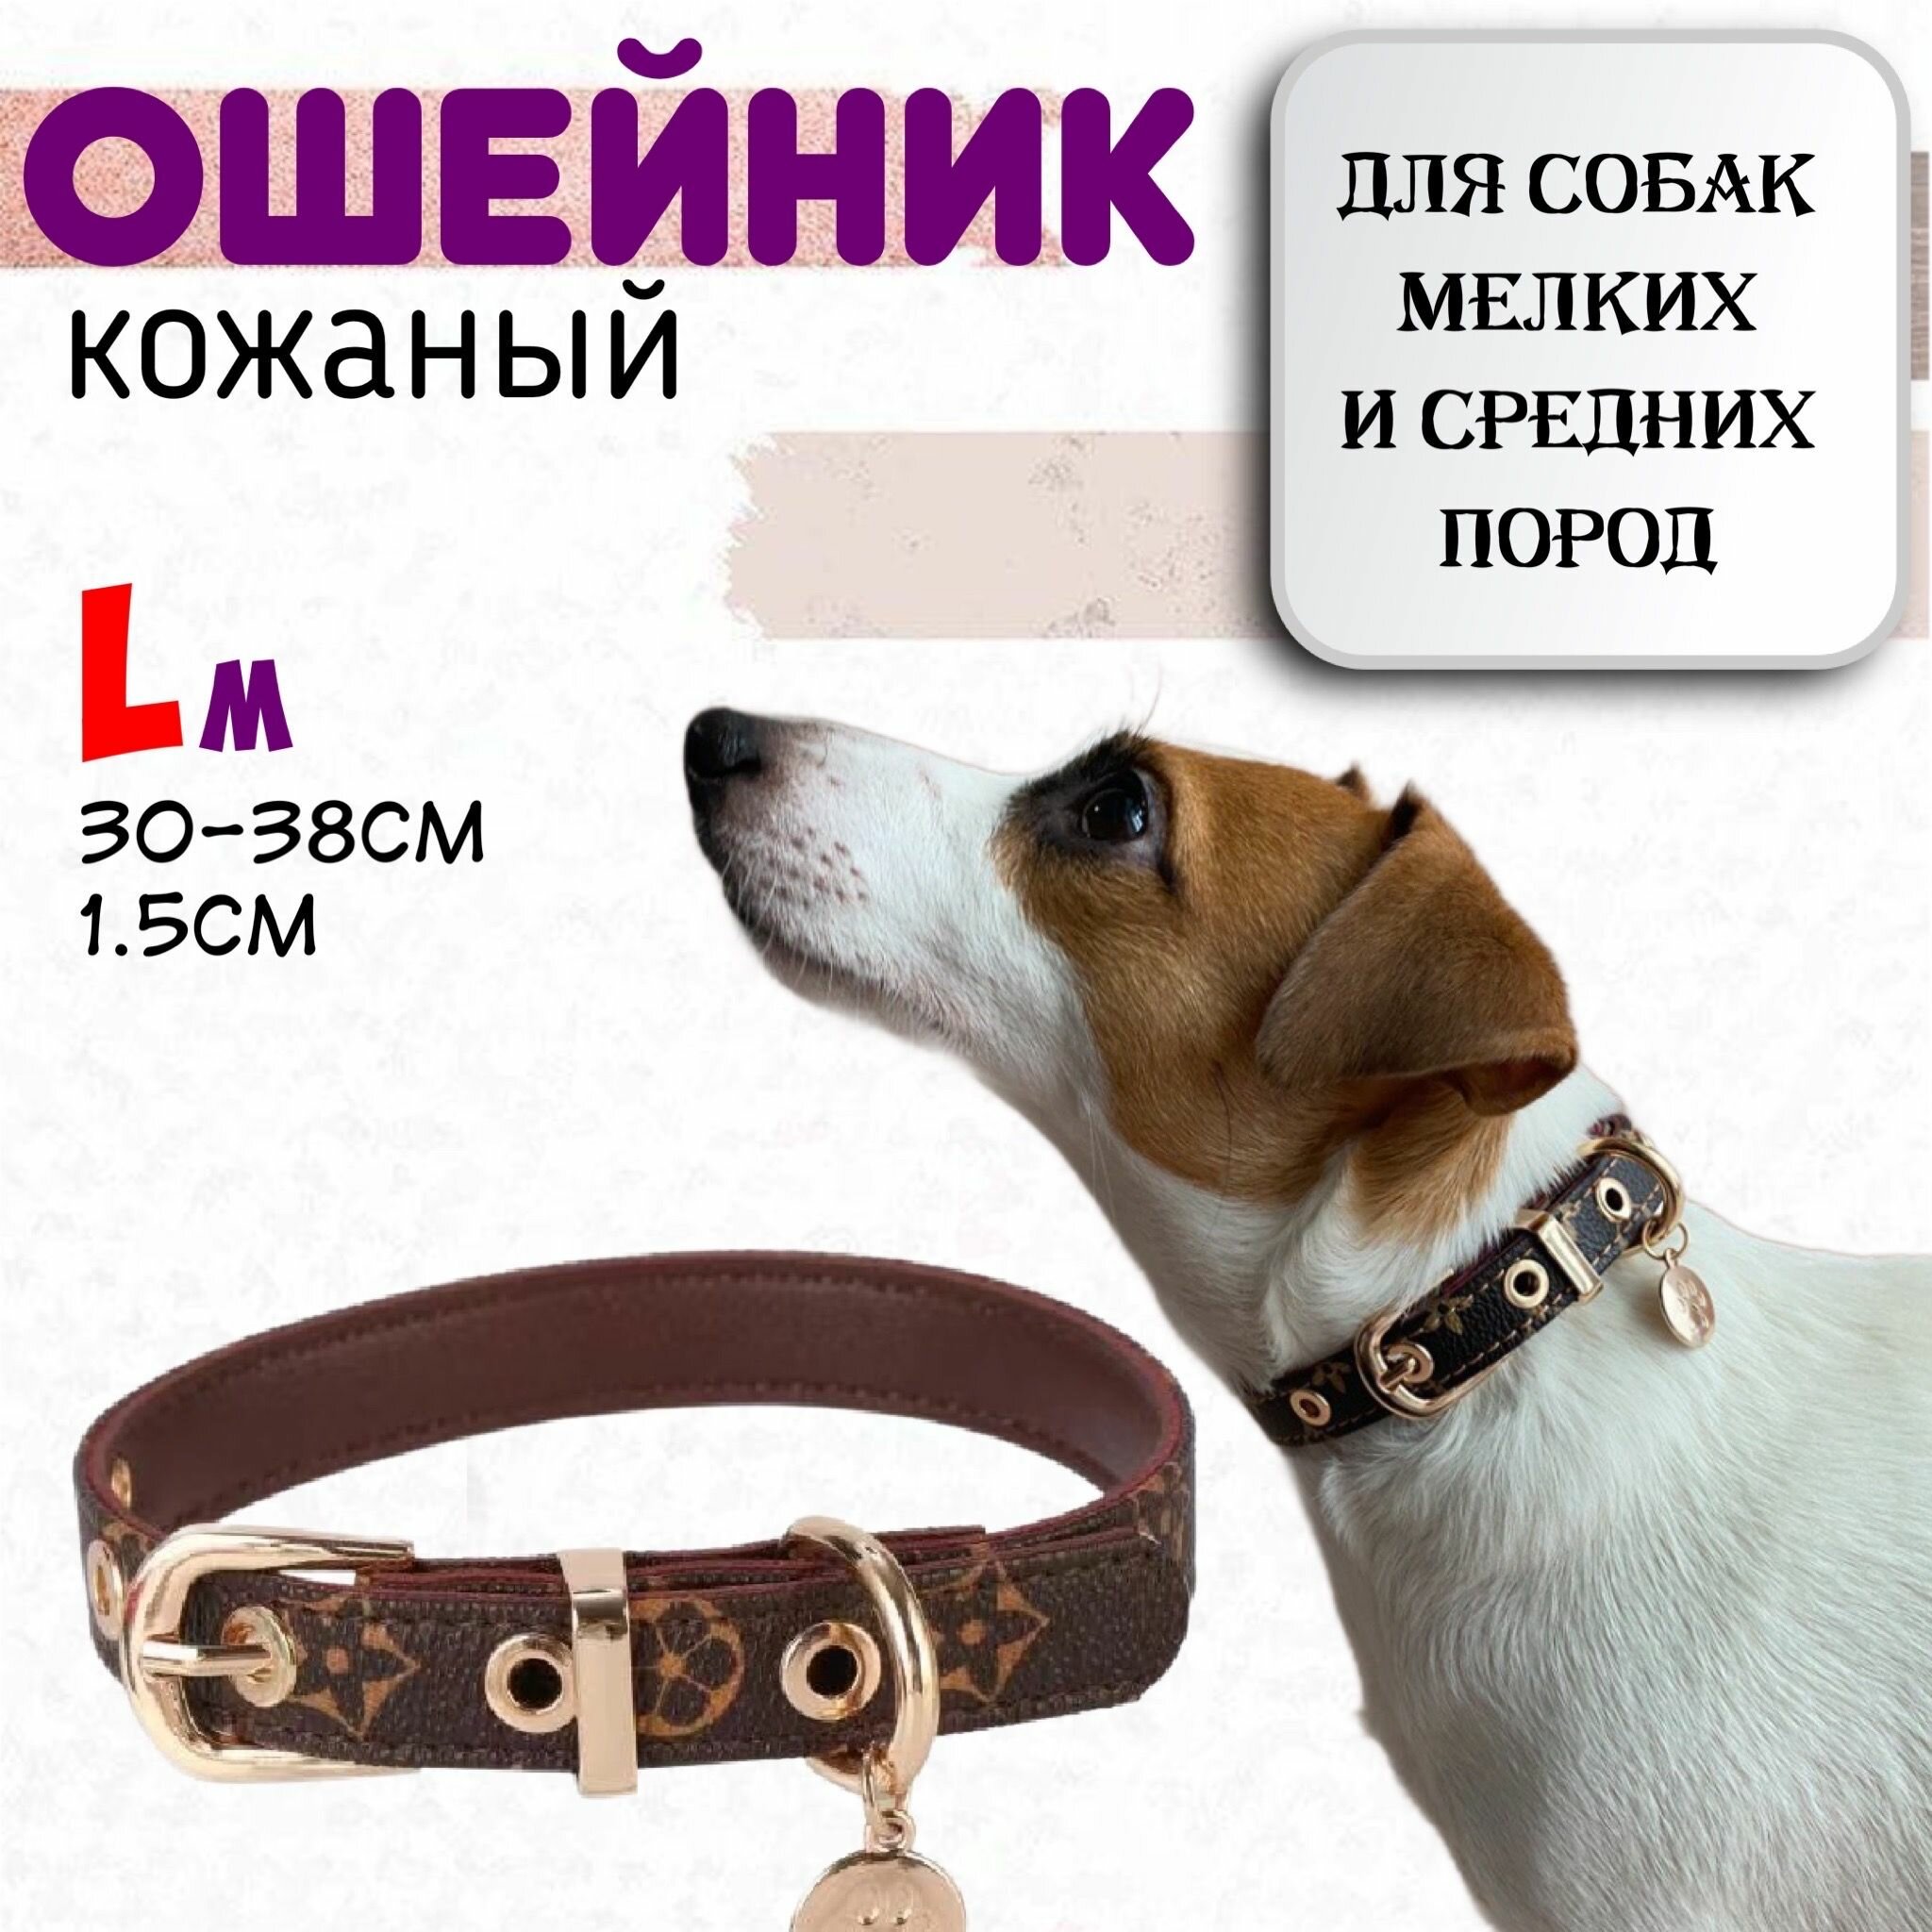 Кожаный ошейник для собак мелких и средних пород, размер L